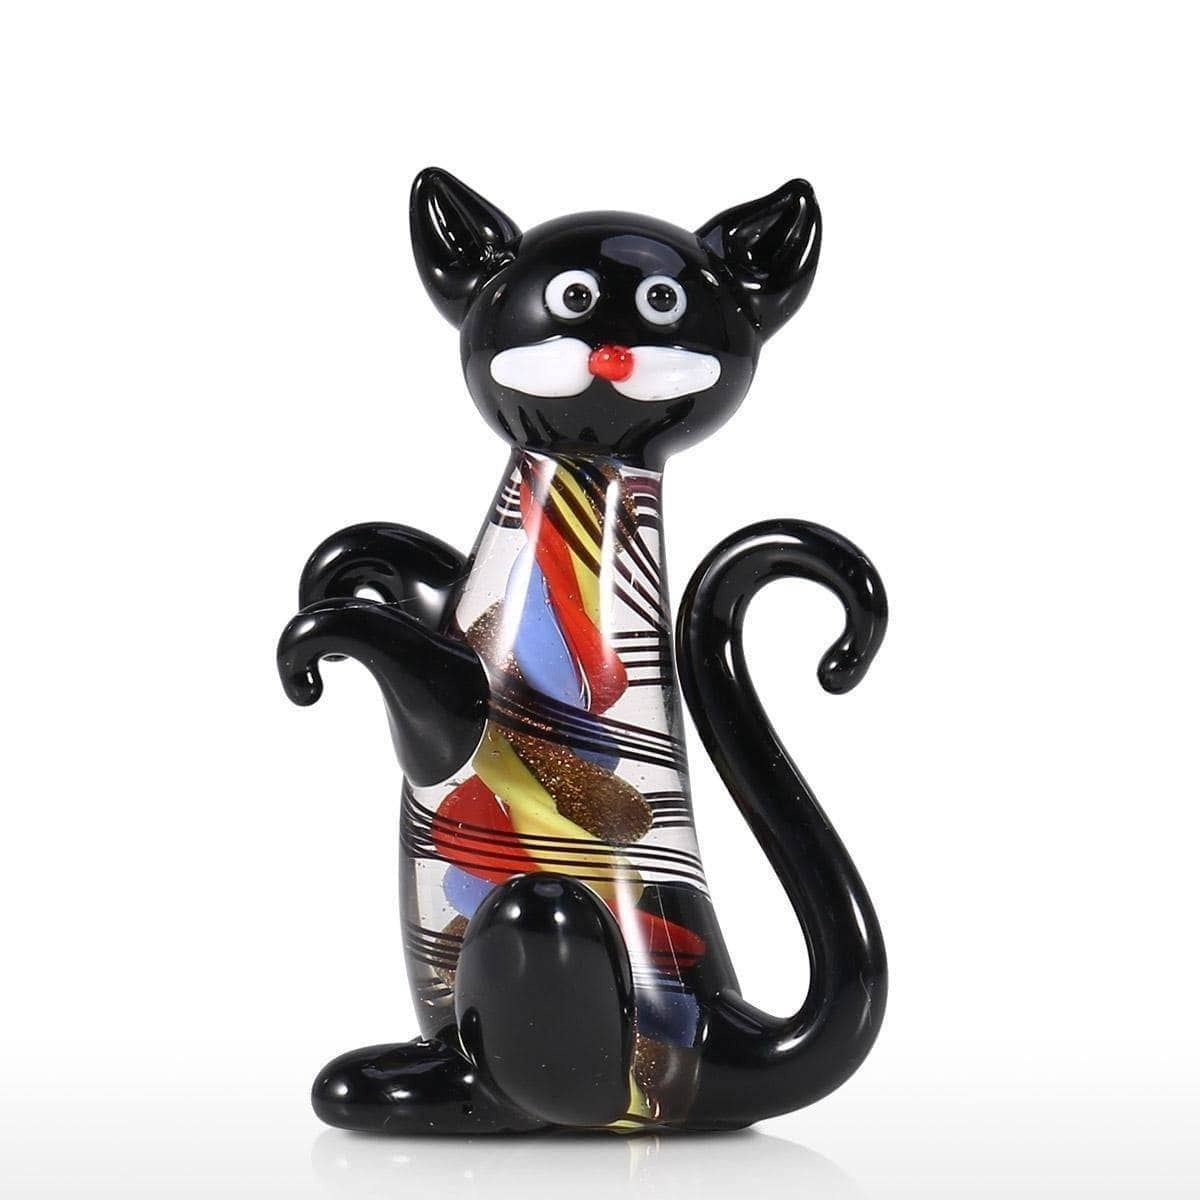 Black Kitten MiniCat Ornament - Minimalist & Cute Home Decor